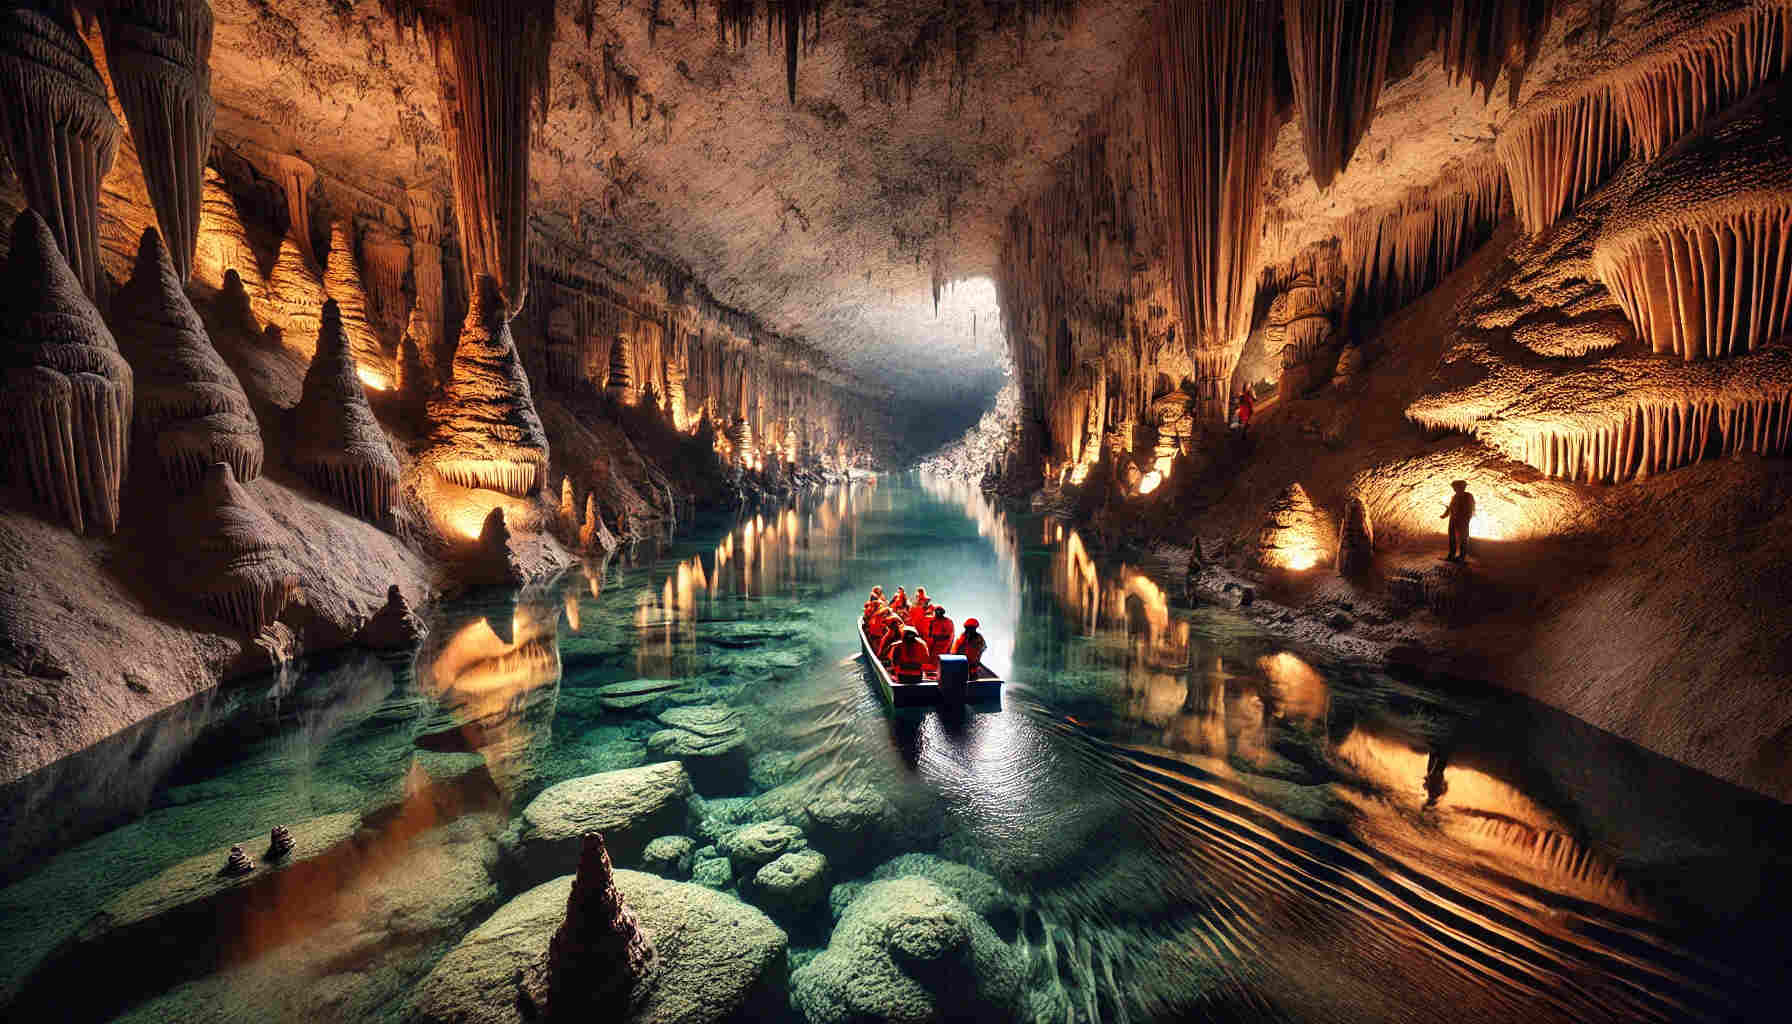 Així és el riu subterrani navegable més llarg d'Europa: a un pas de Catalunya!